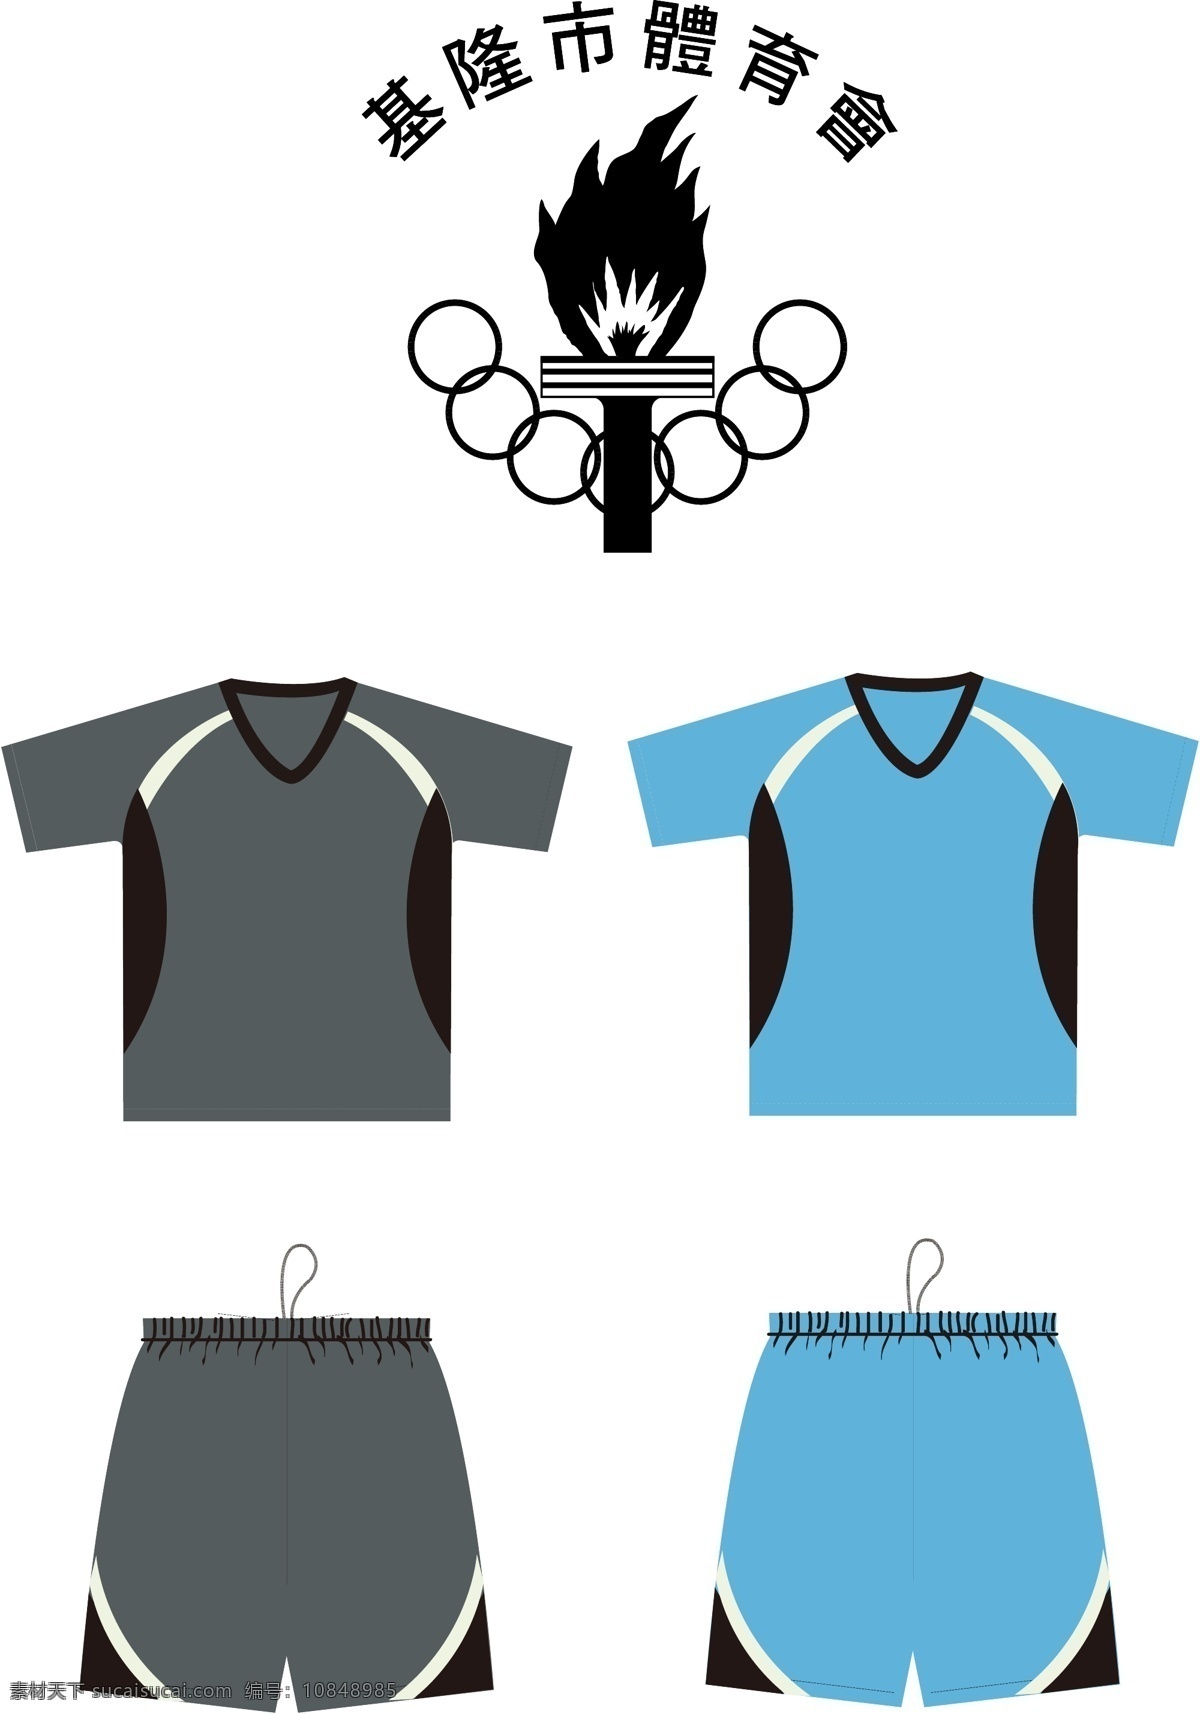 基隆市 體 育 會 服 裝 提案 logo 剪接配色t恤 運動短褲 服装设计 服装设计图